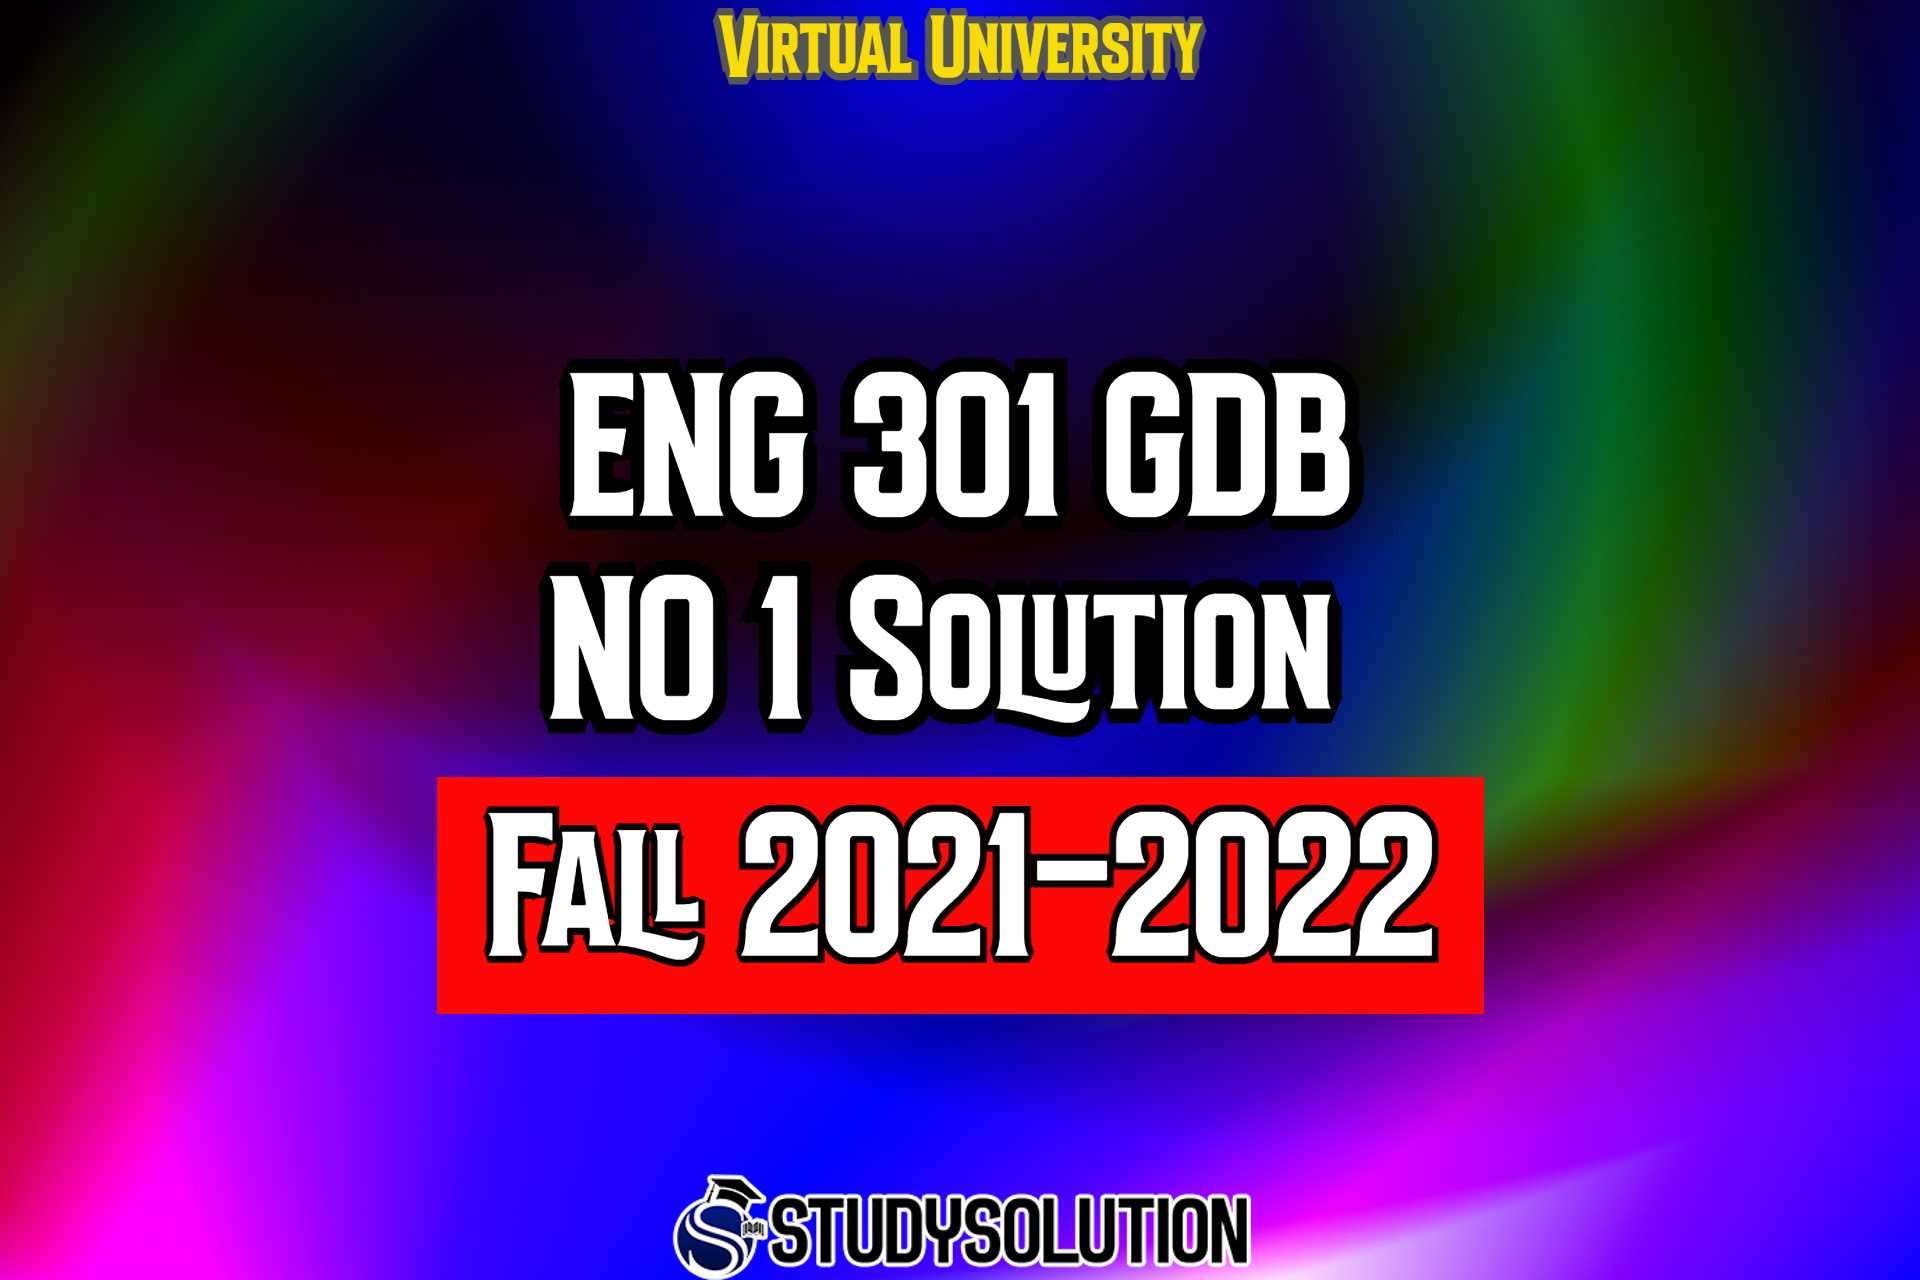 ENG301 GDB No 1 Solution Fall 2022